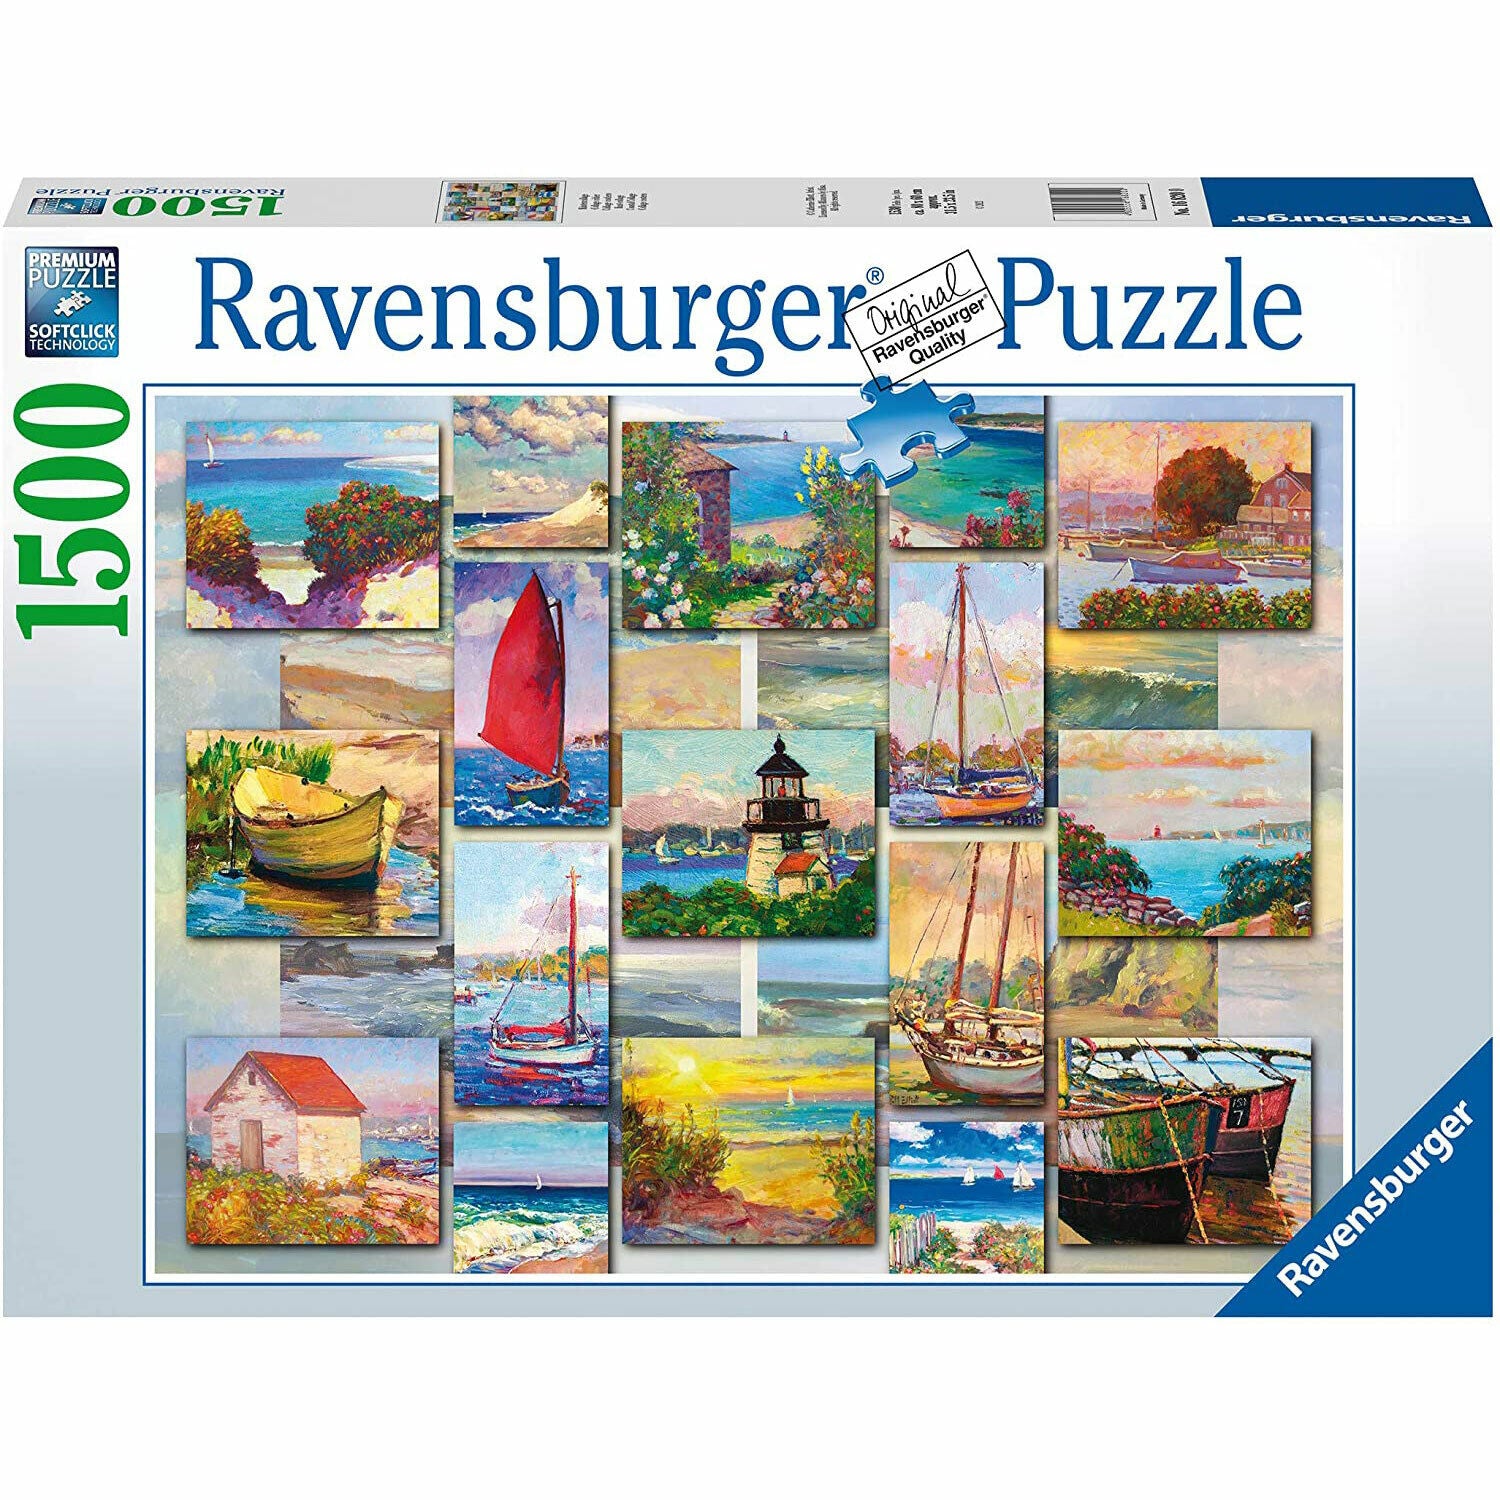 New Ravensburger Coastal Collage 1500 Piece Puzzle - Sealed Box